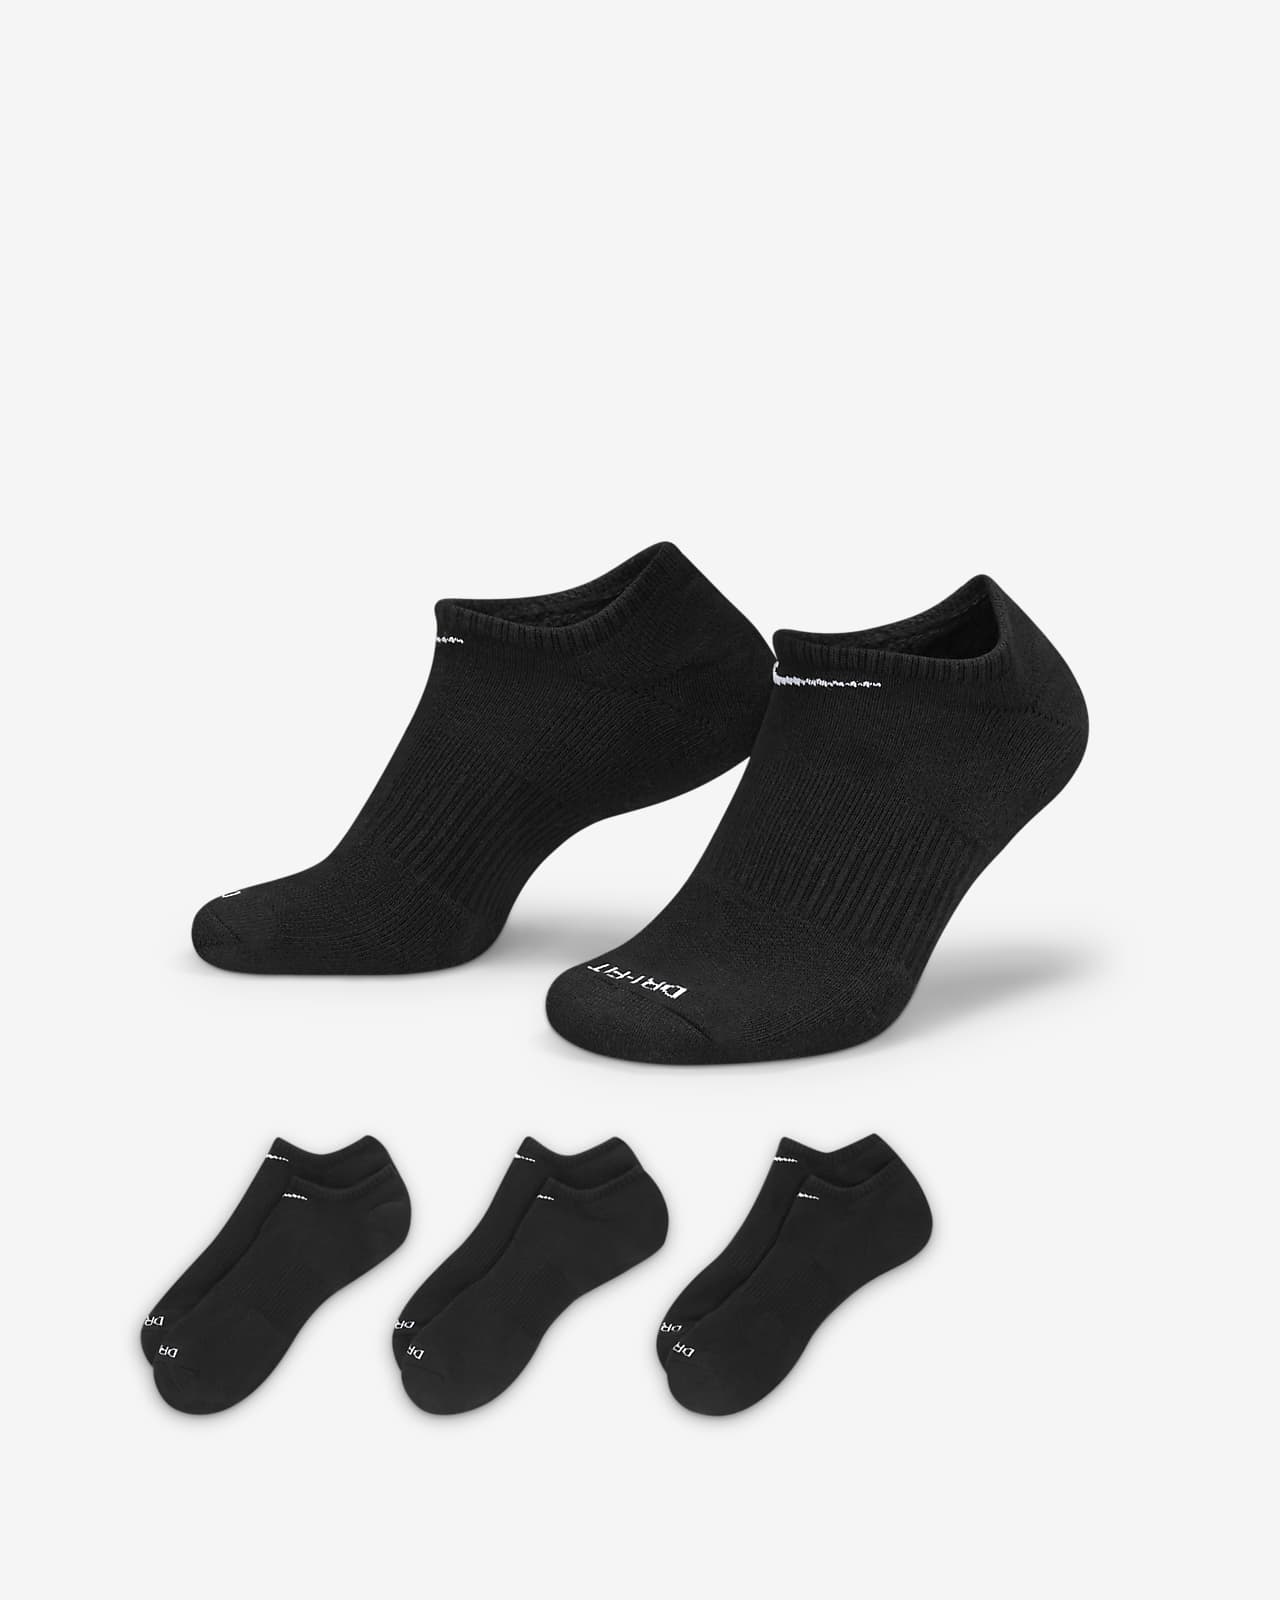 Calcetines de entrenamiento ocultos, con
amortiguación, Nike Everyday Plus (3
pares)